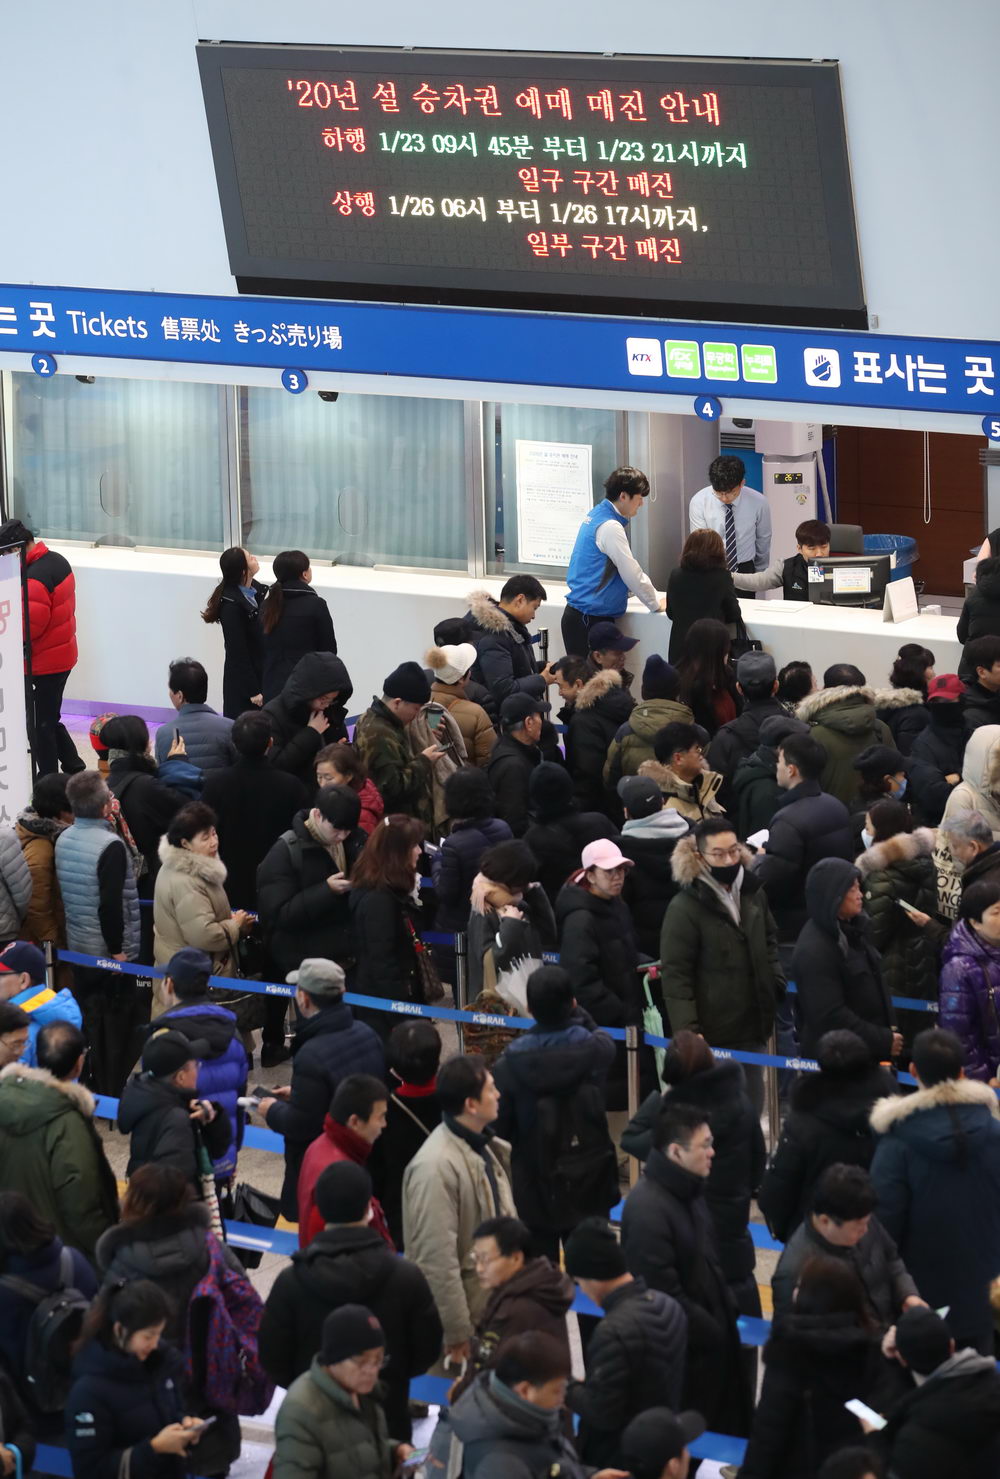 韩国春运火车票开售车站人山人海熬夜排队抢票